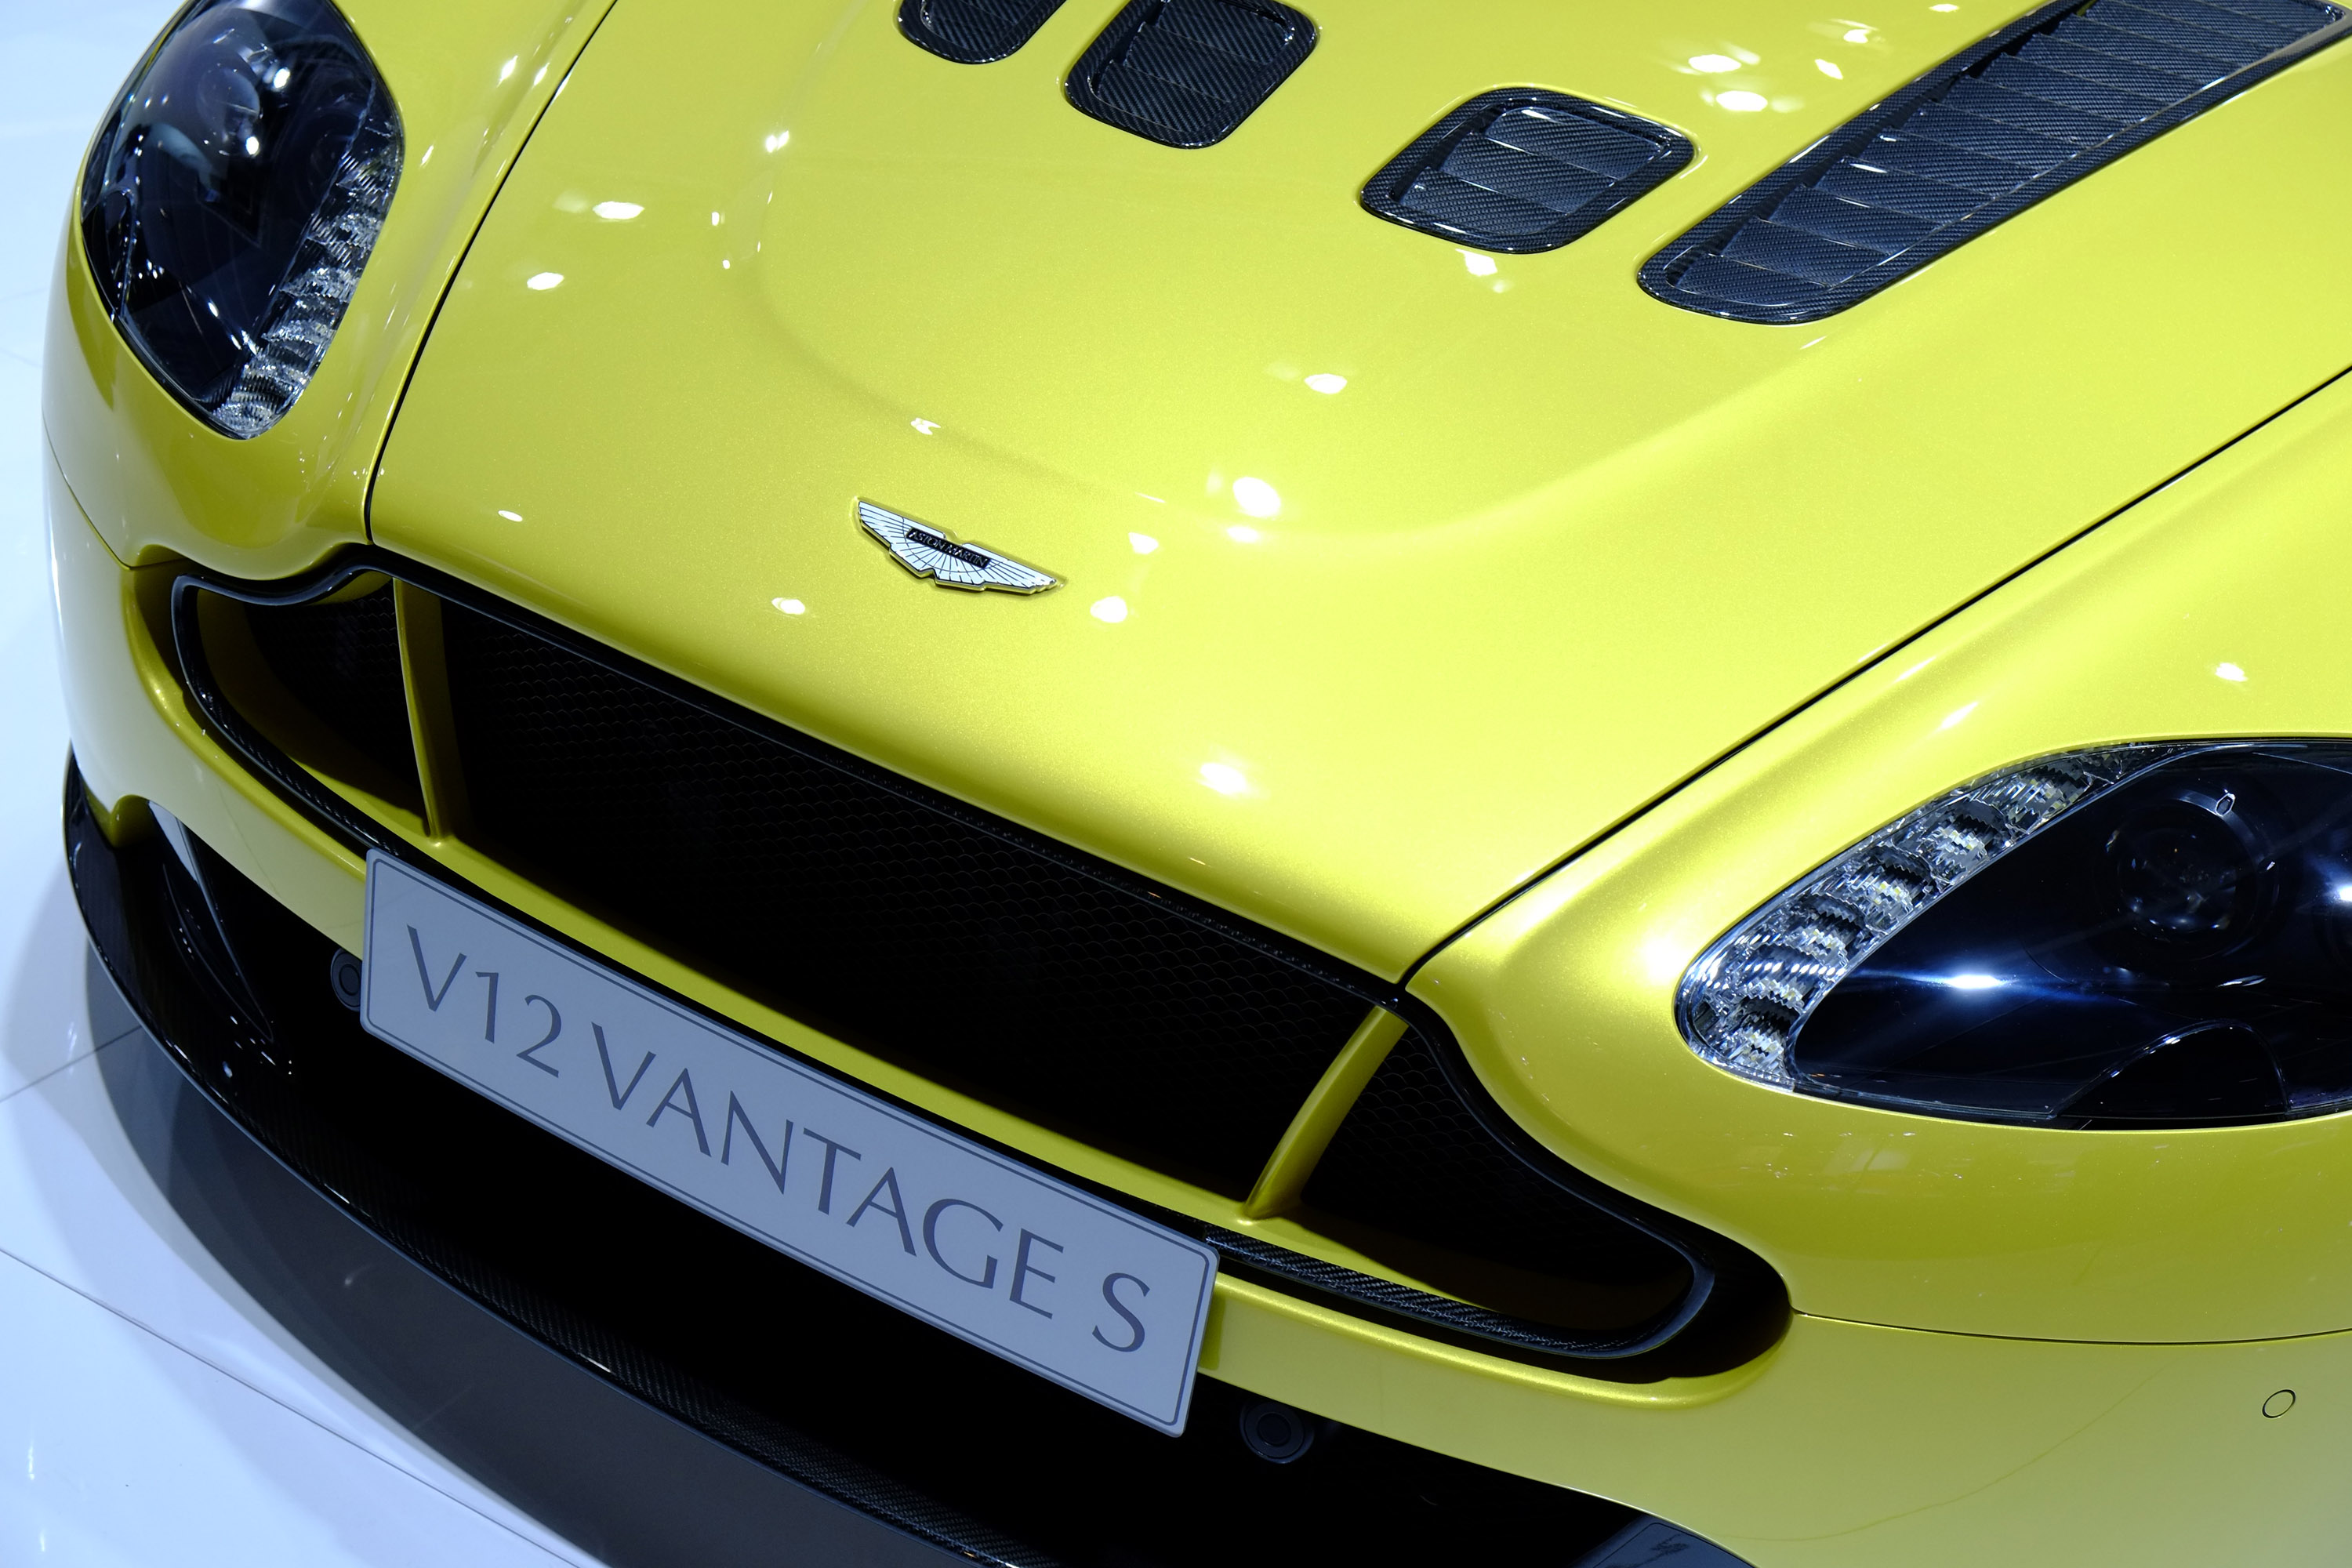 Aston Martin V12 Vantage S Frankfurt